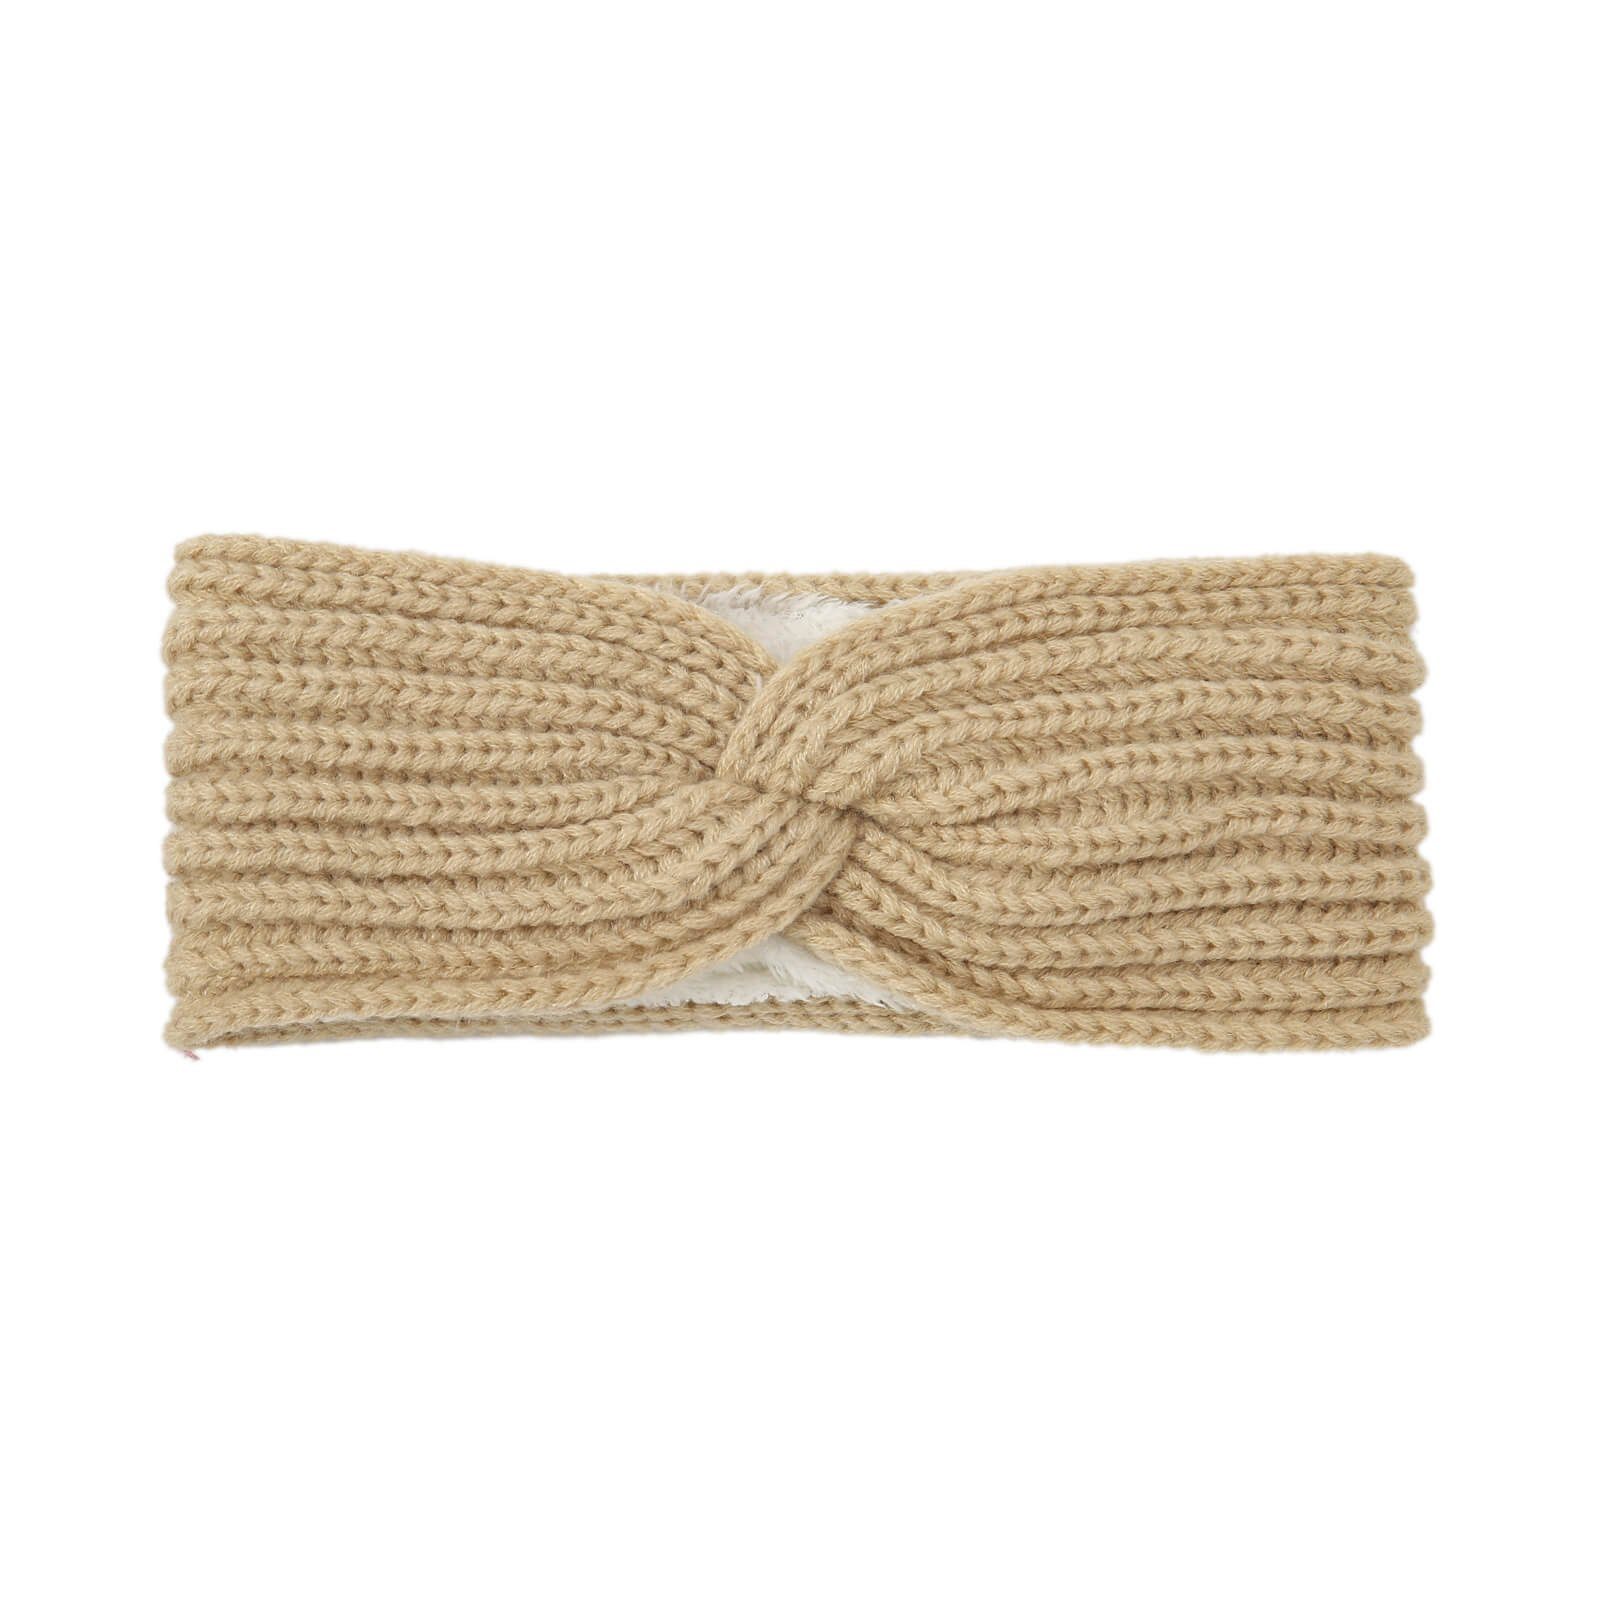 Leoberg Designs Headband - 177072-Braun-17 (Einzelartikel) Verschiedene Haarband Winter Stirnband Kopfband Damen